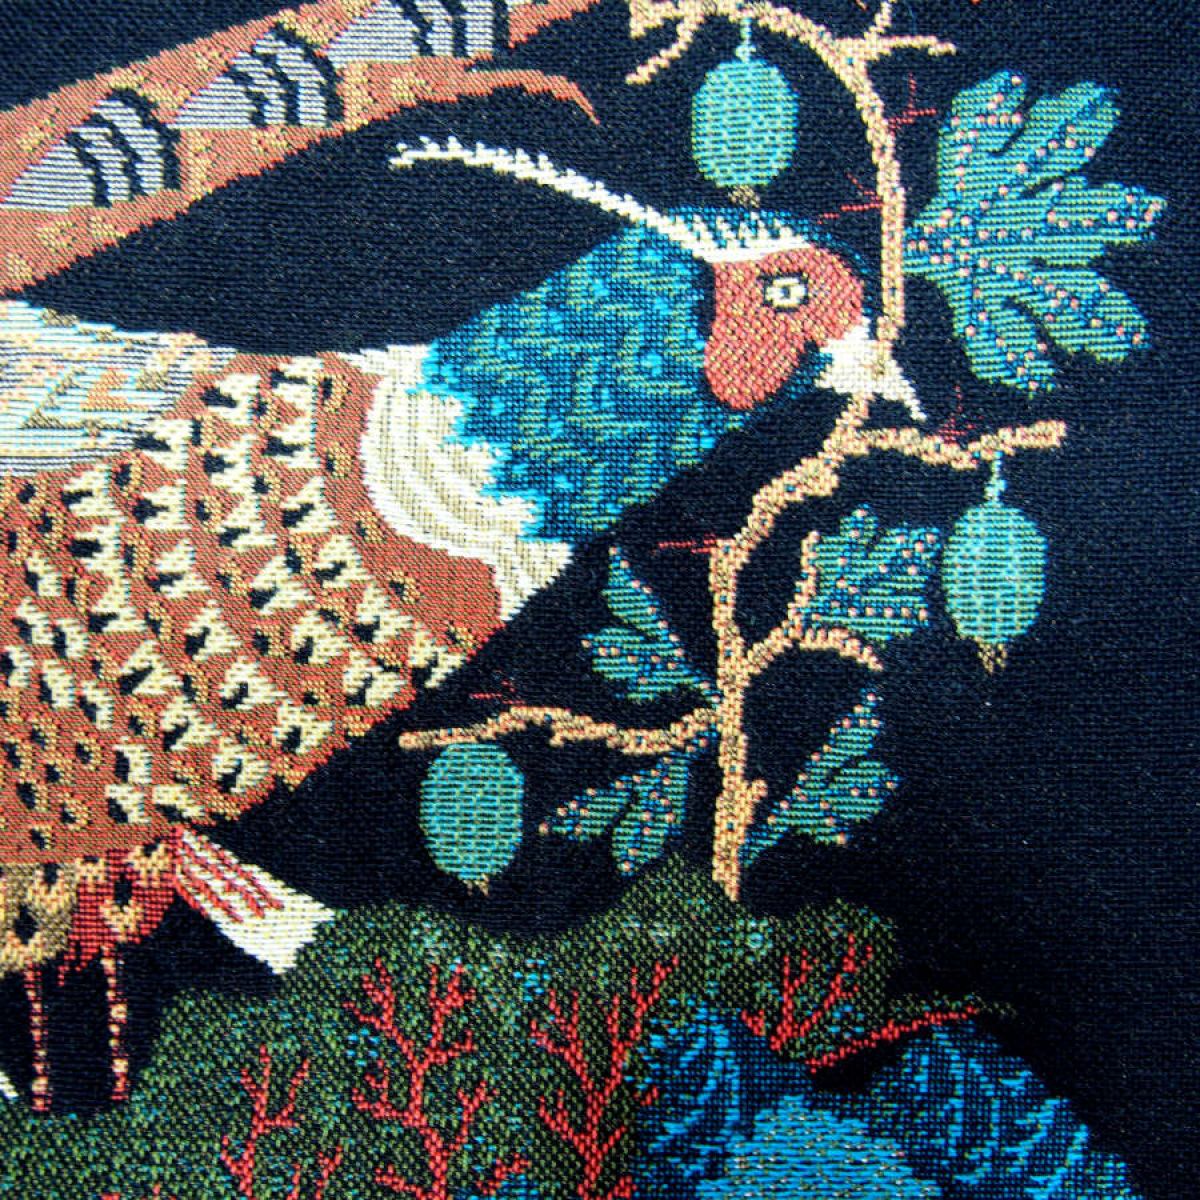 Velvet Cushion Sleeve "Pheasants & Rhubarbs" with Embroidery (50 x 50 cm)